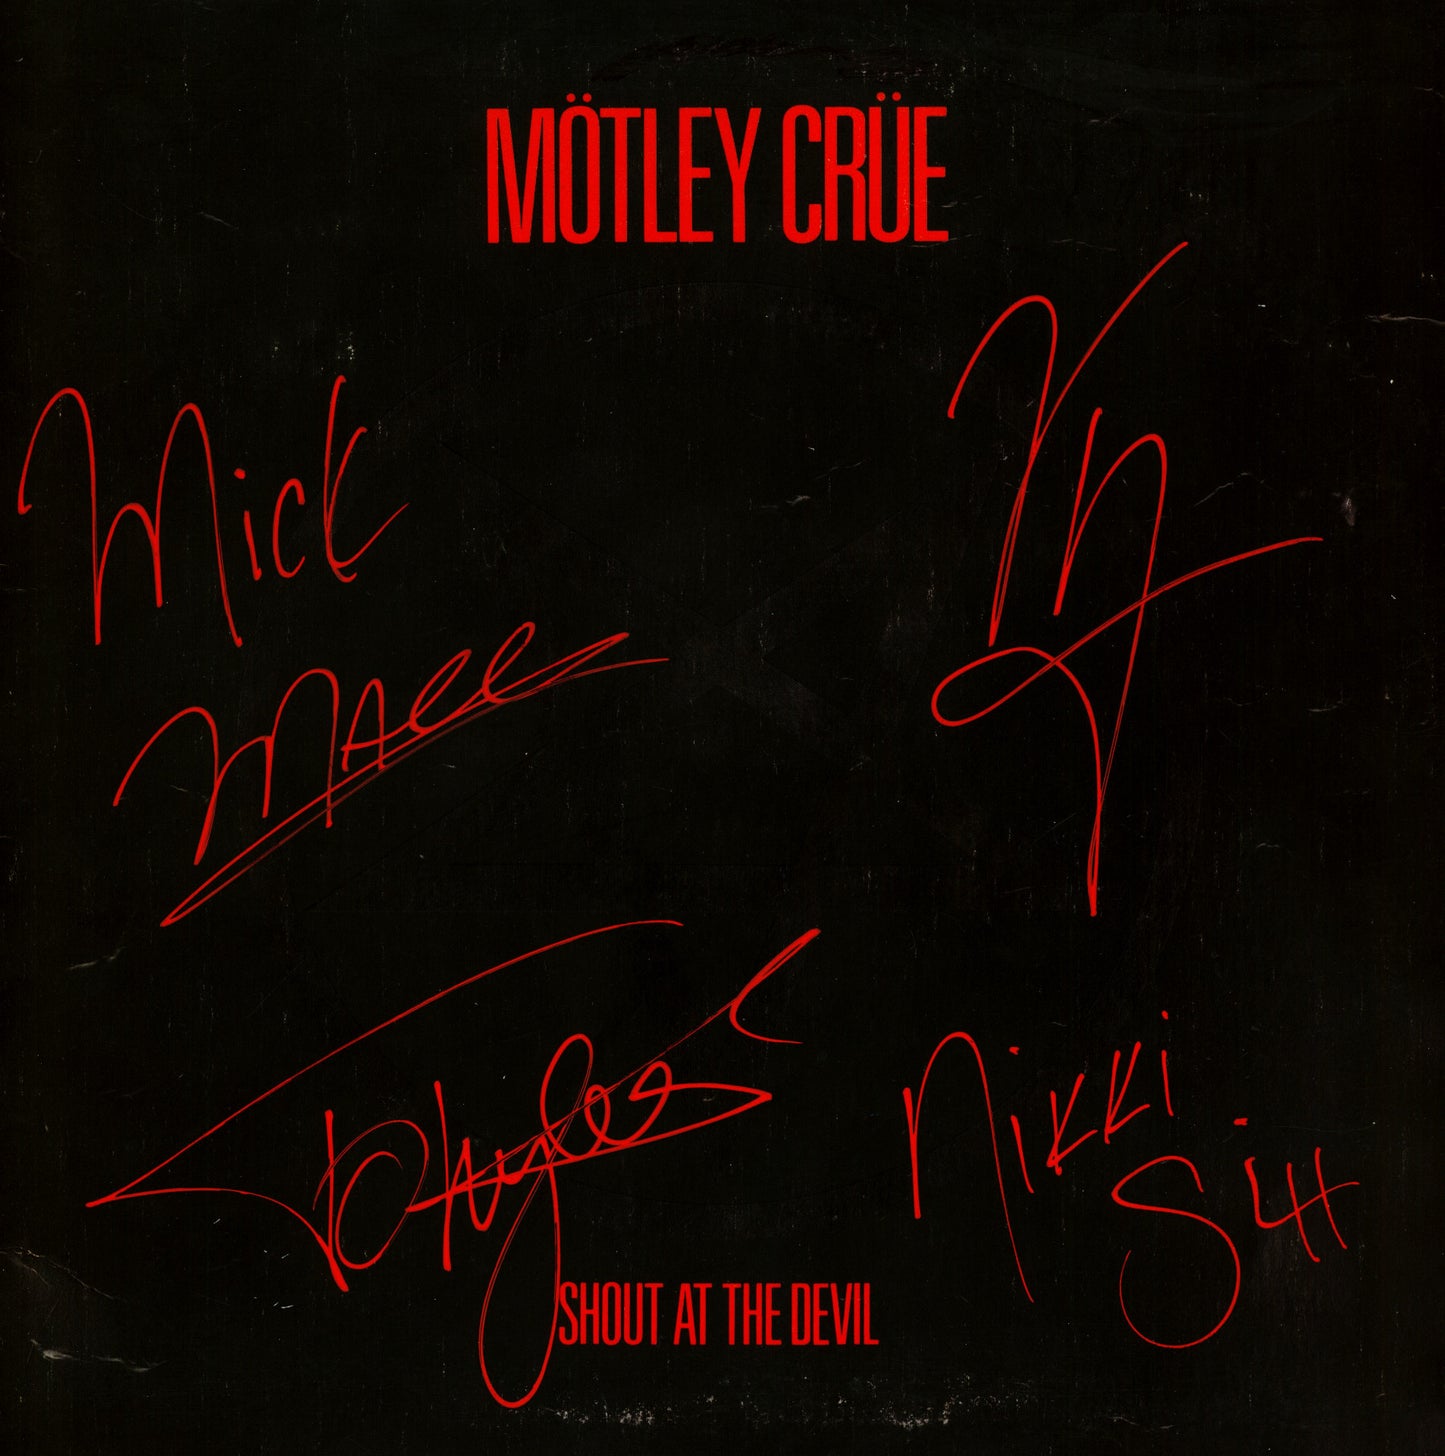 Motley Crue Autographed LP "shout at the devil"  lp - Zion Graphic Collectibles